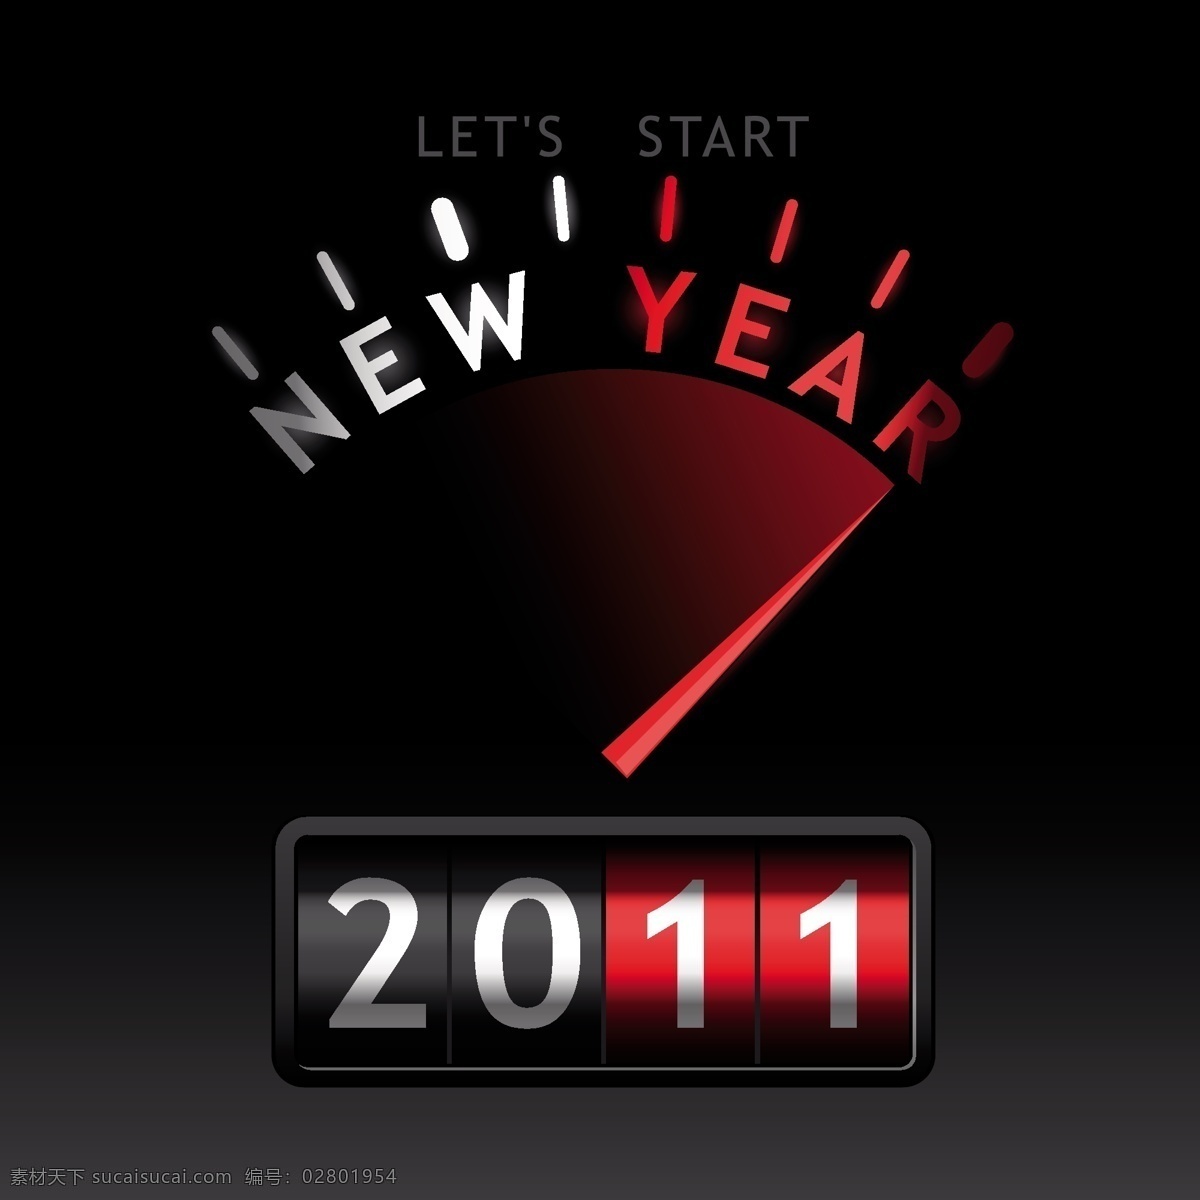 2011 新年 英文 字体 矢量图 节 图 英国 维特征 新的一年 里程表 矢量 艺术字